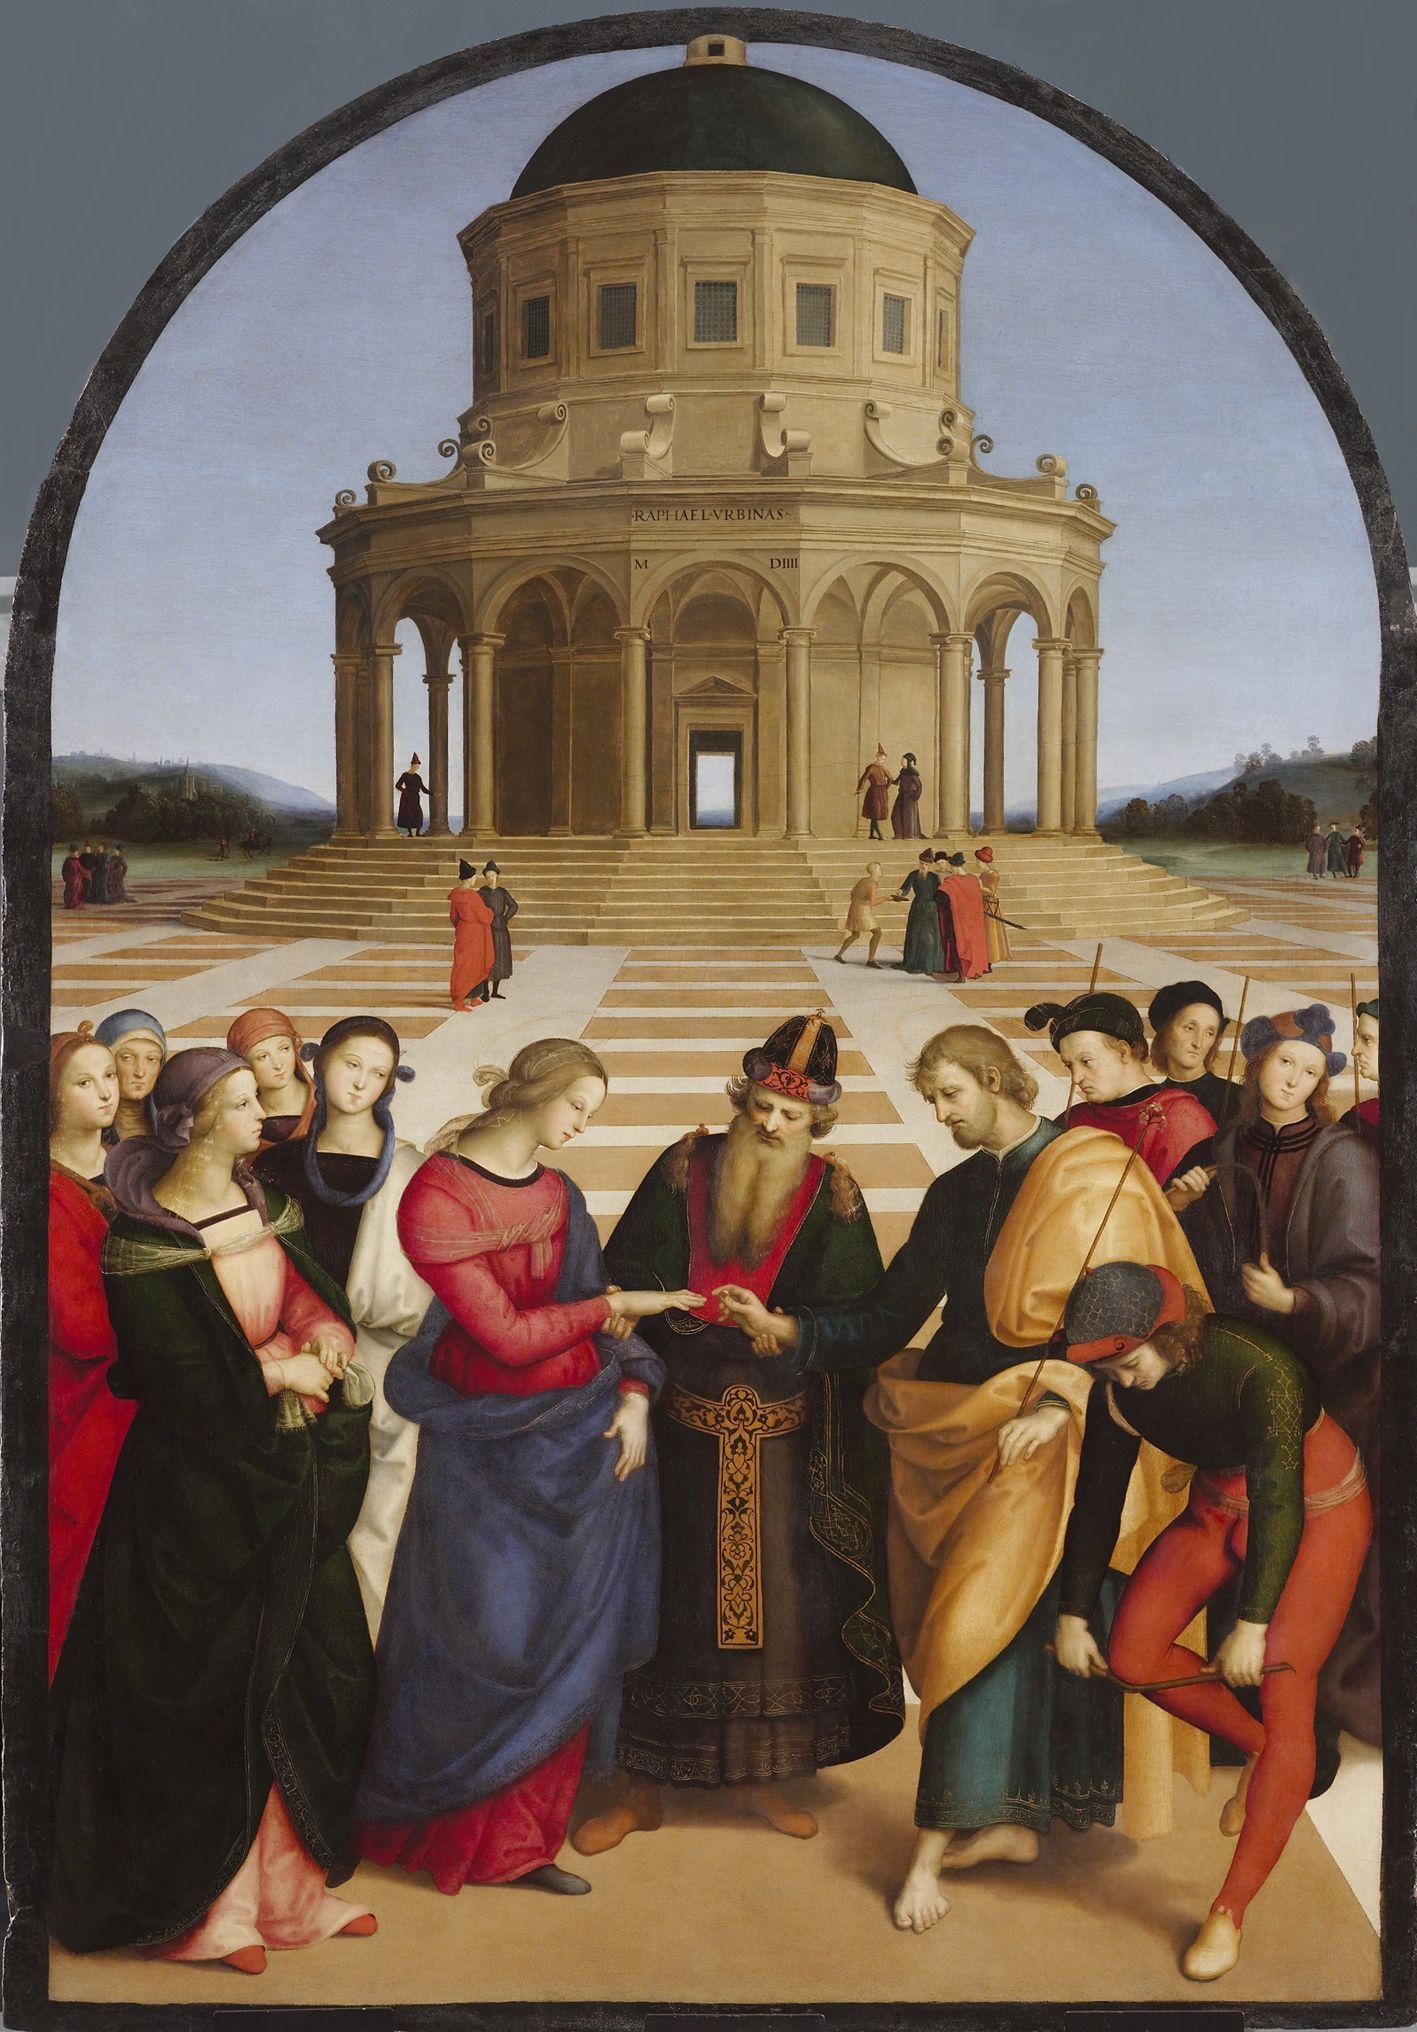 زواج العذراء by Raphael Santi - 1504 - الأبعاد: 170 × 118 